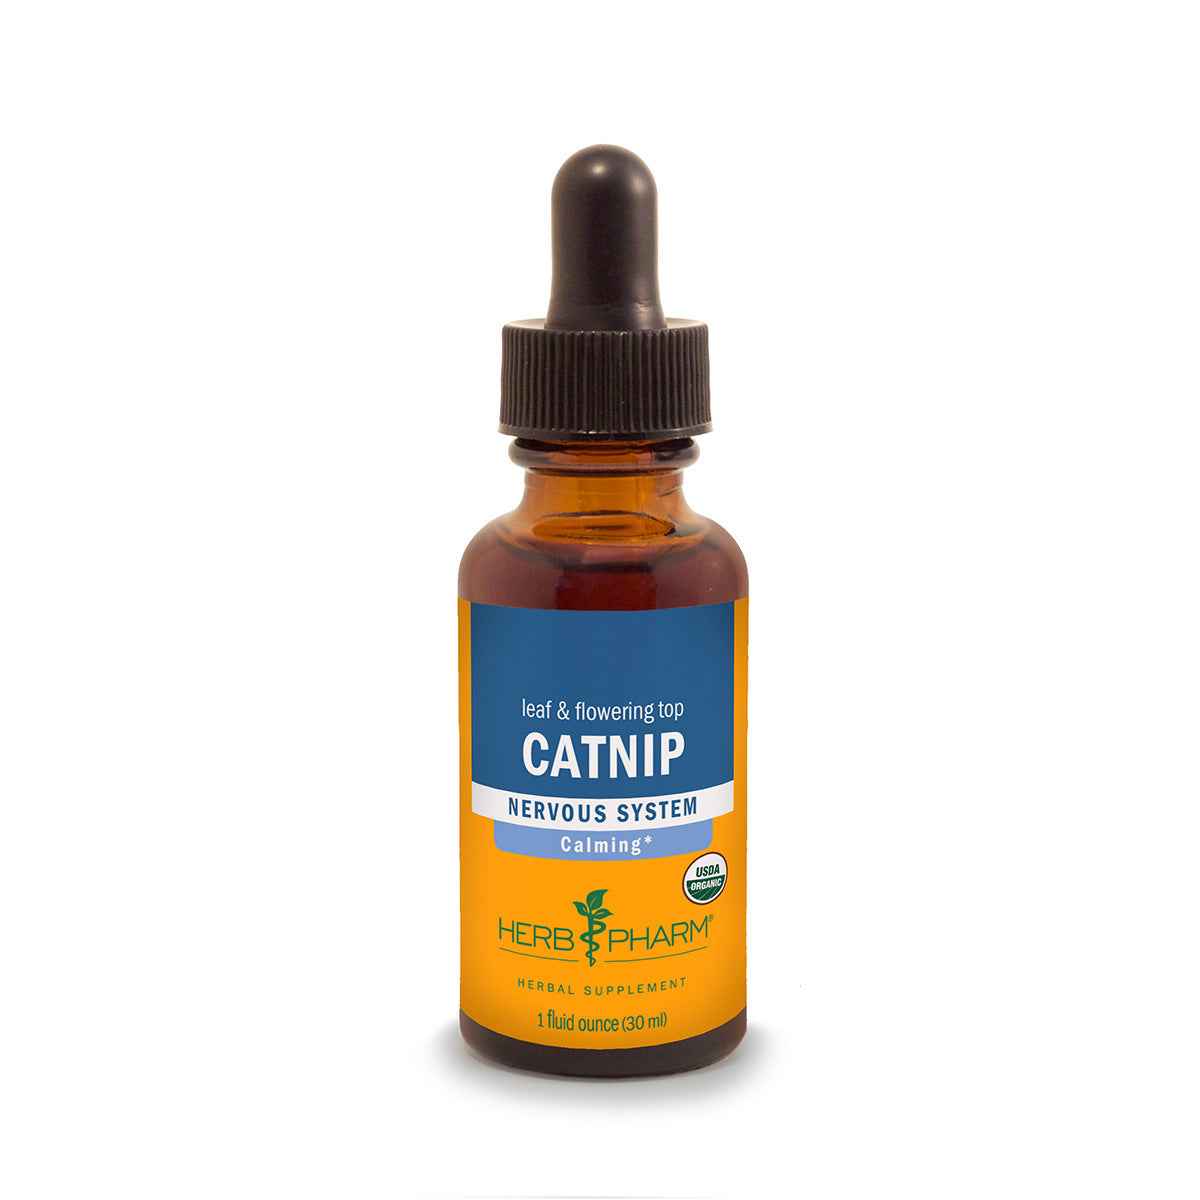 Primary image of Catnip Extract